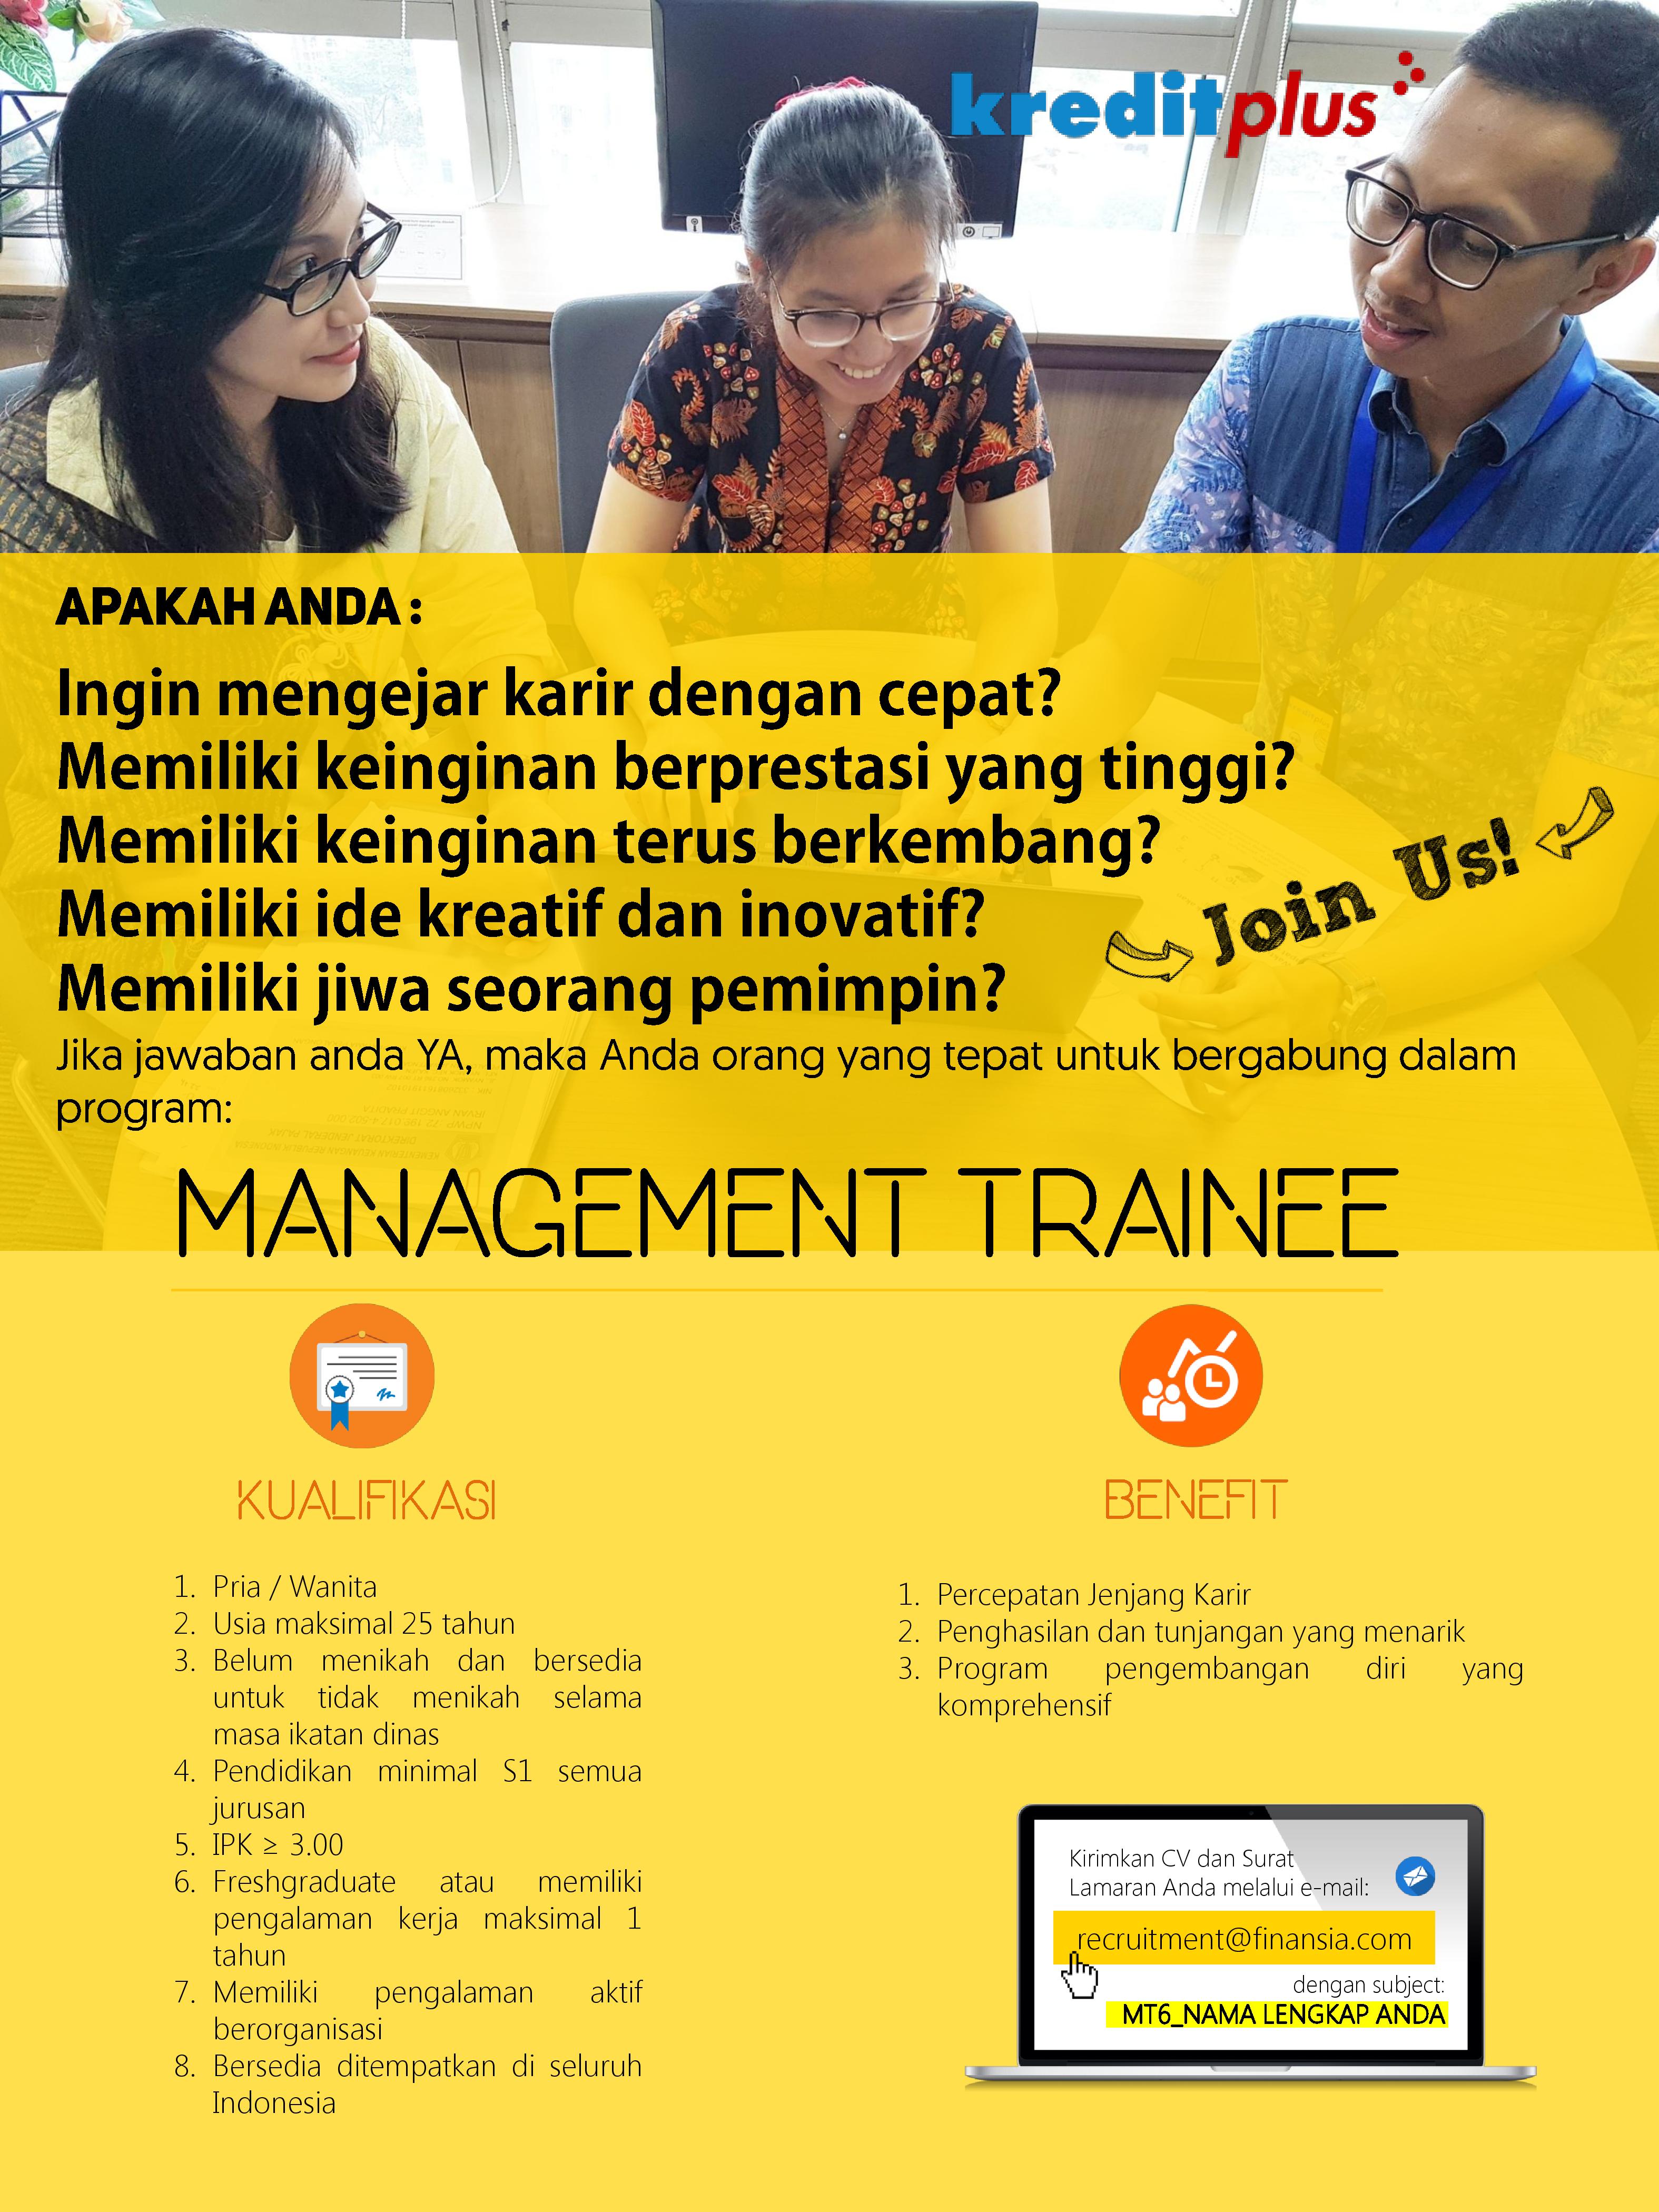 Lowongan Kerja : Management Trainee (Kreditplus)